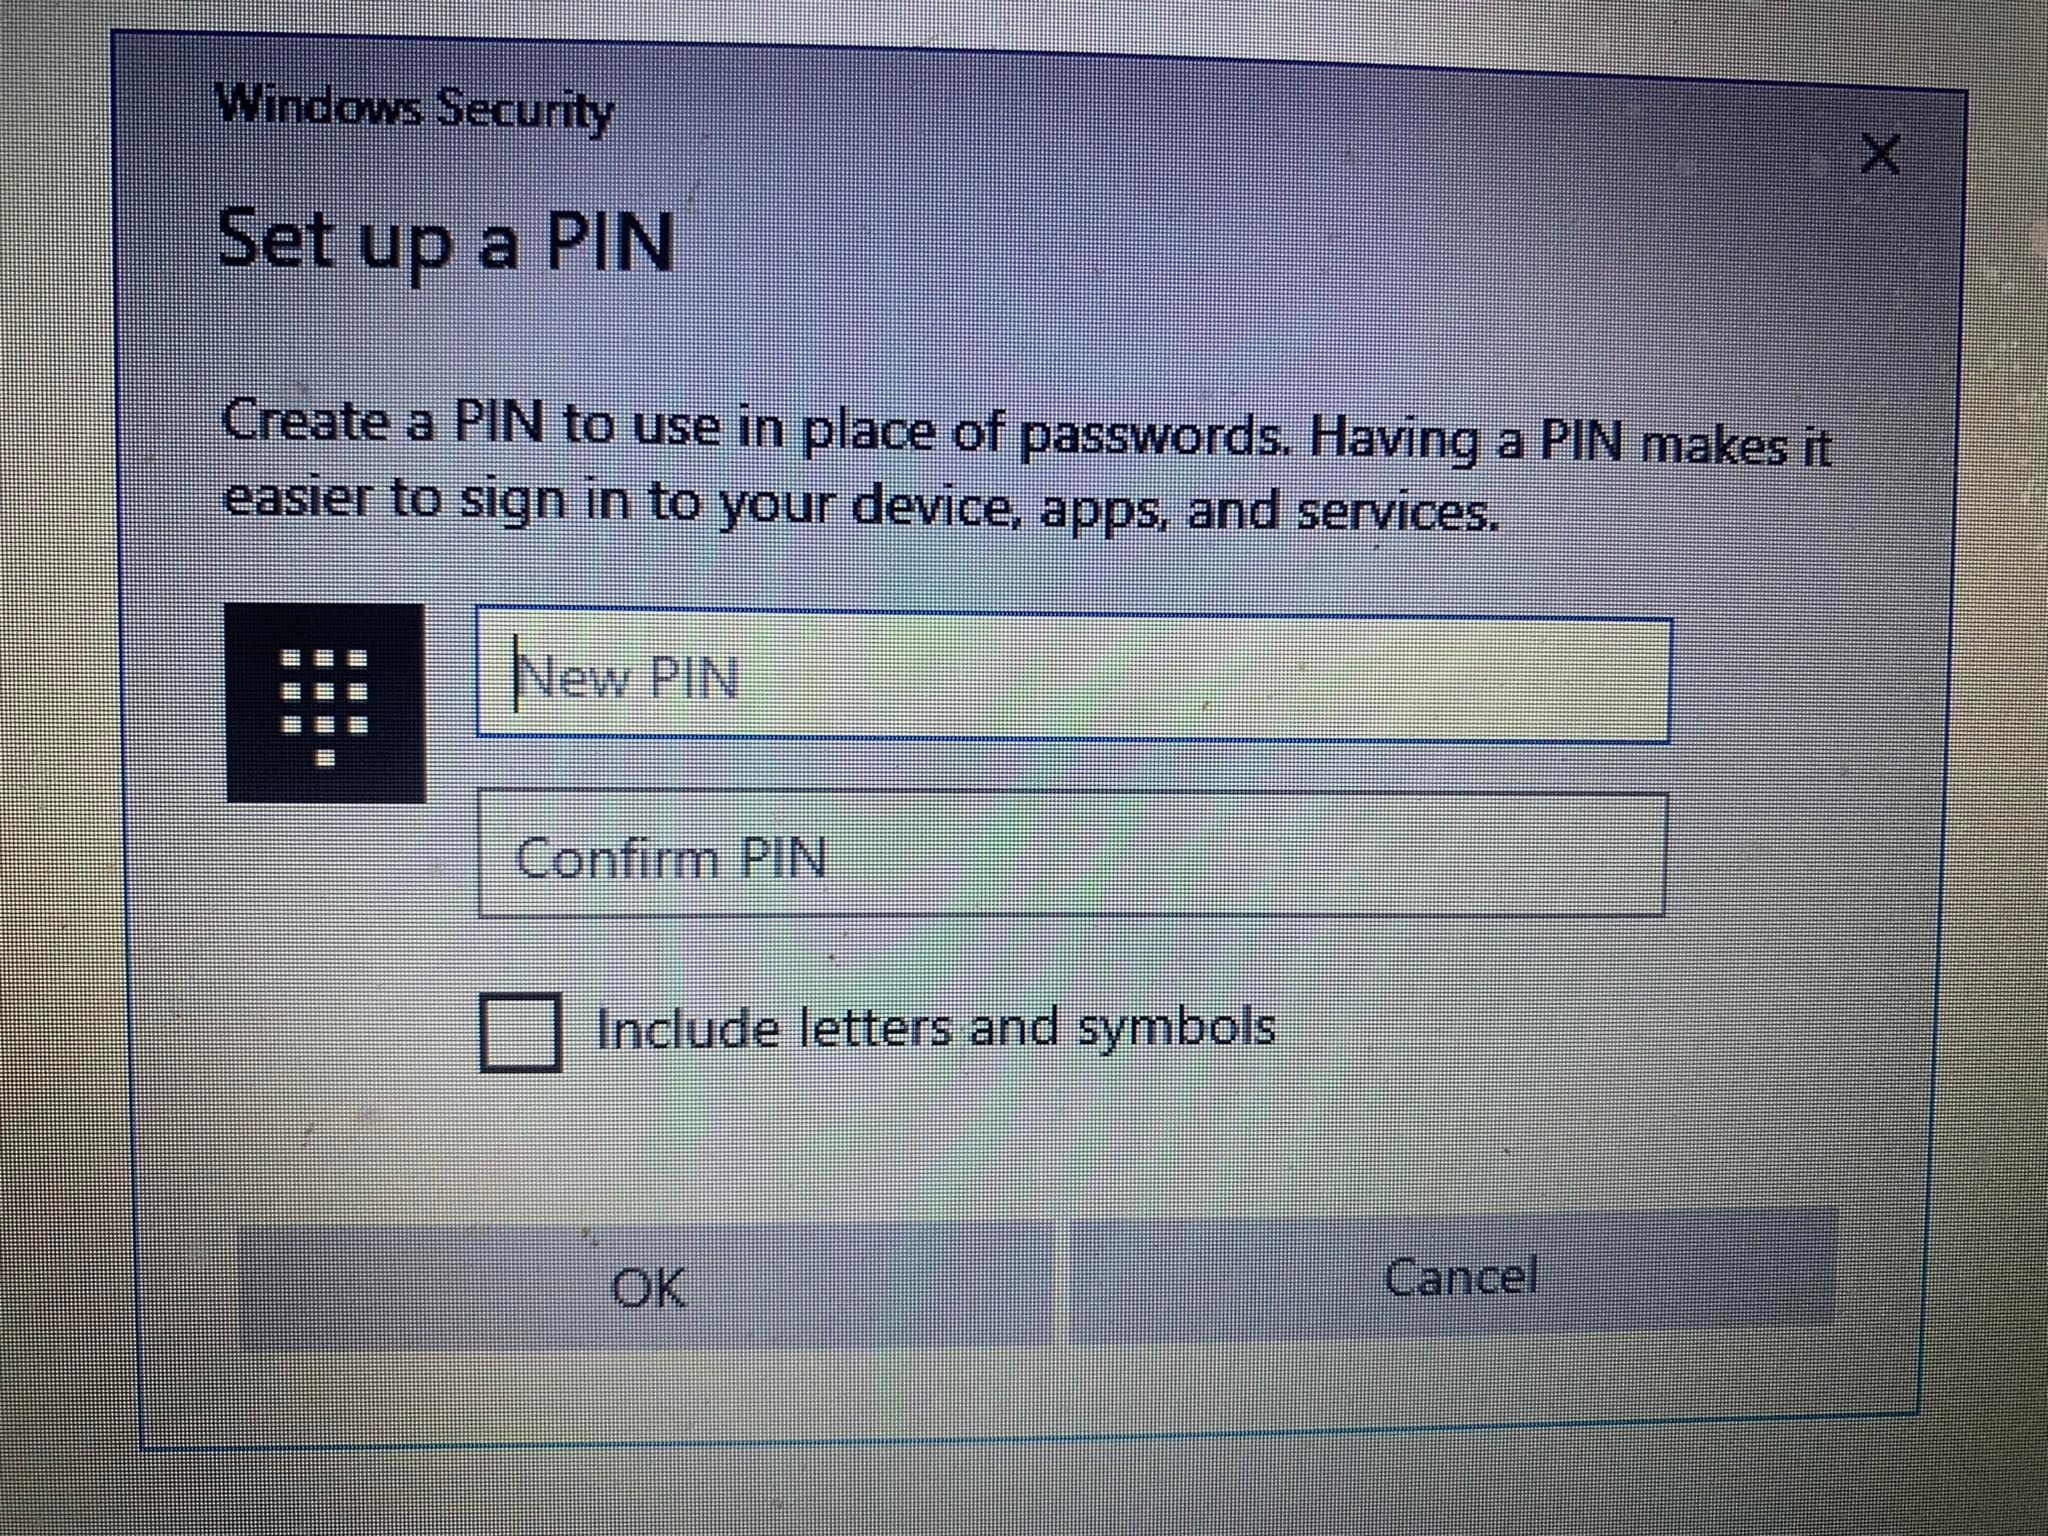 Adicionando um novo PIN para alterar o antigo na tela de login do Windows